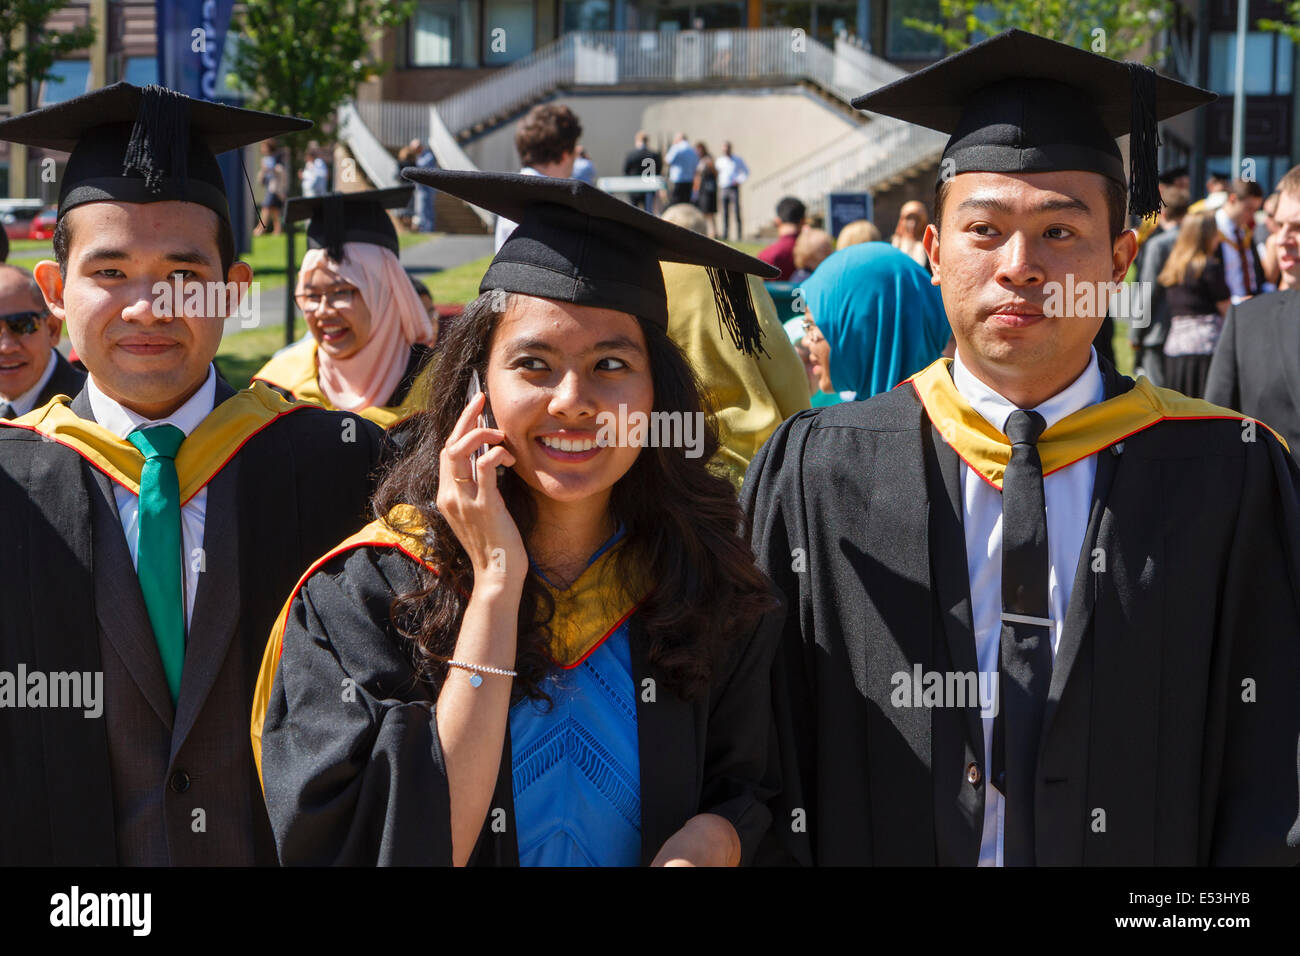 International students  at University graduation day, Keele University, UK Stock Photo